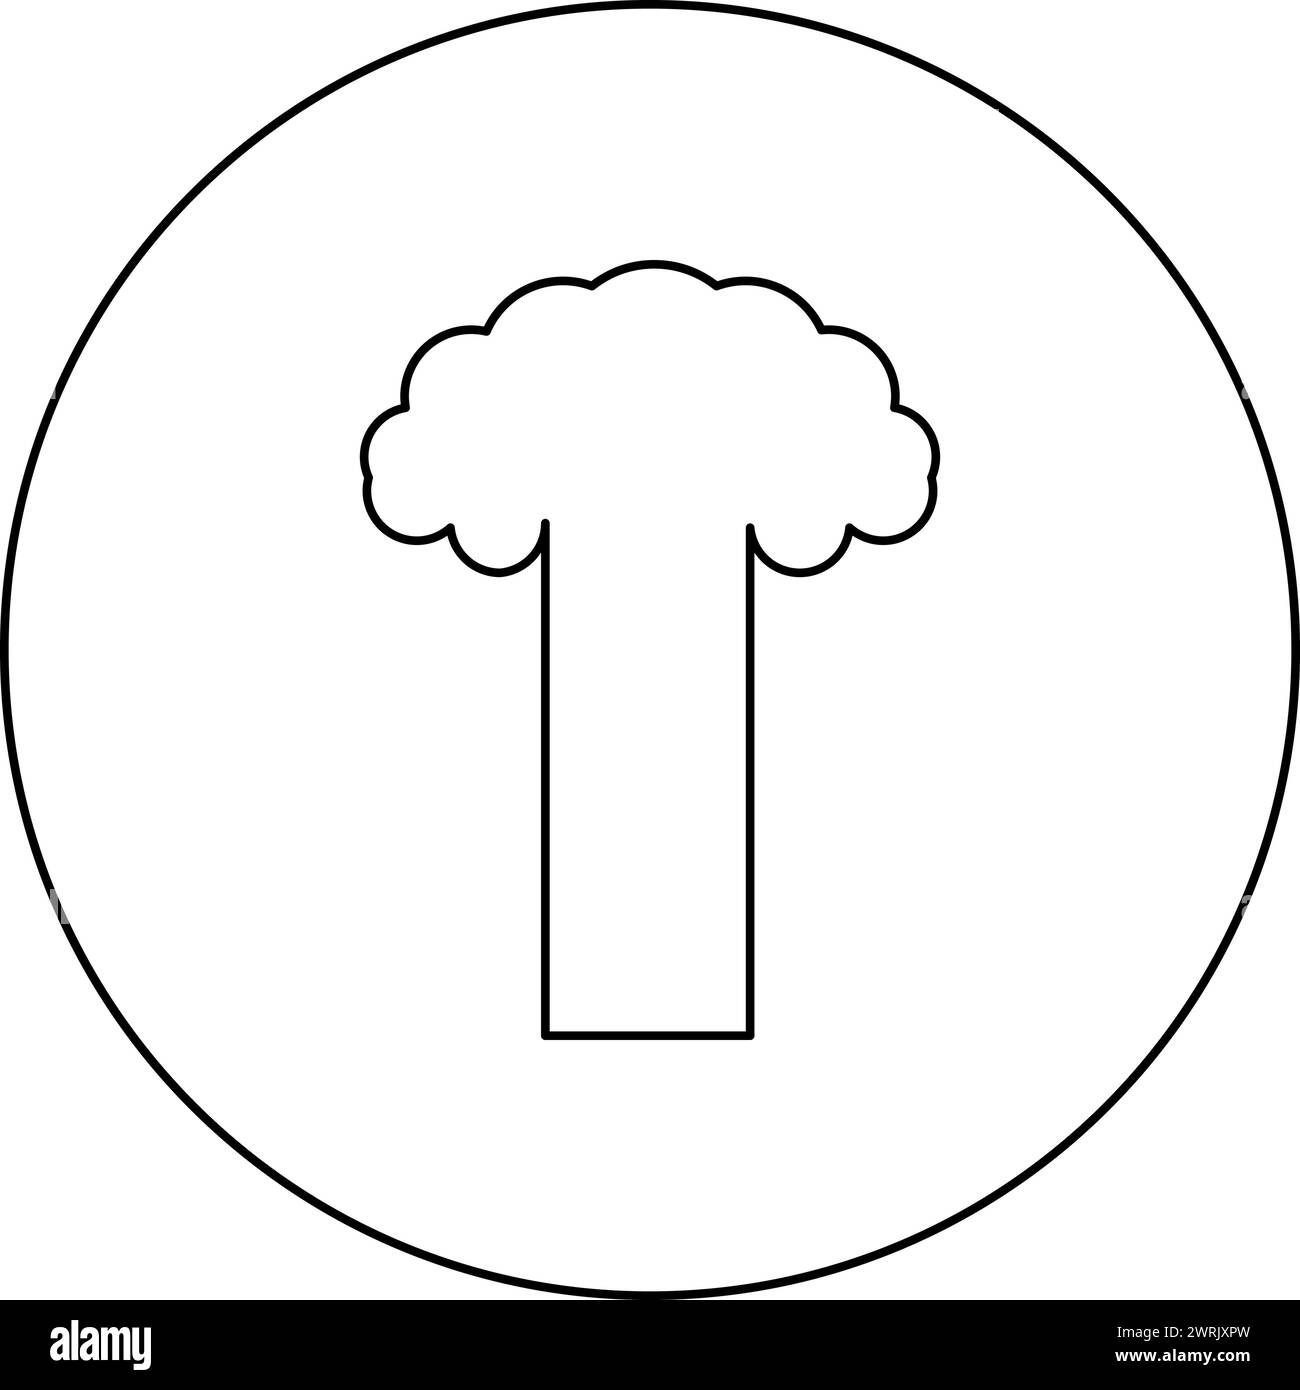 Esplosione nucleare fungo esplosivo distruzione esplosiva icona in cerchio di colore nero vettoriale immagine contorno linea sottile Illustrazione Vettoriale